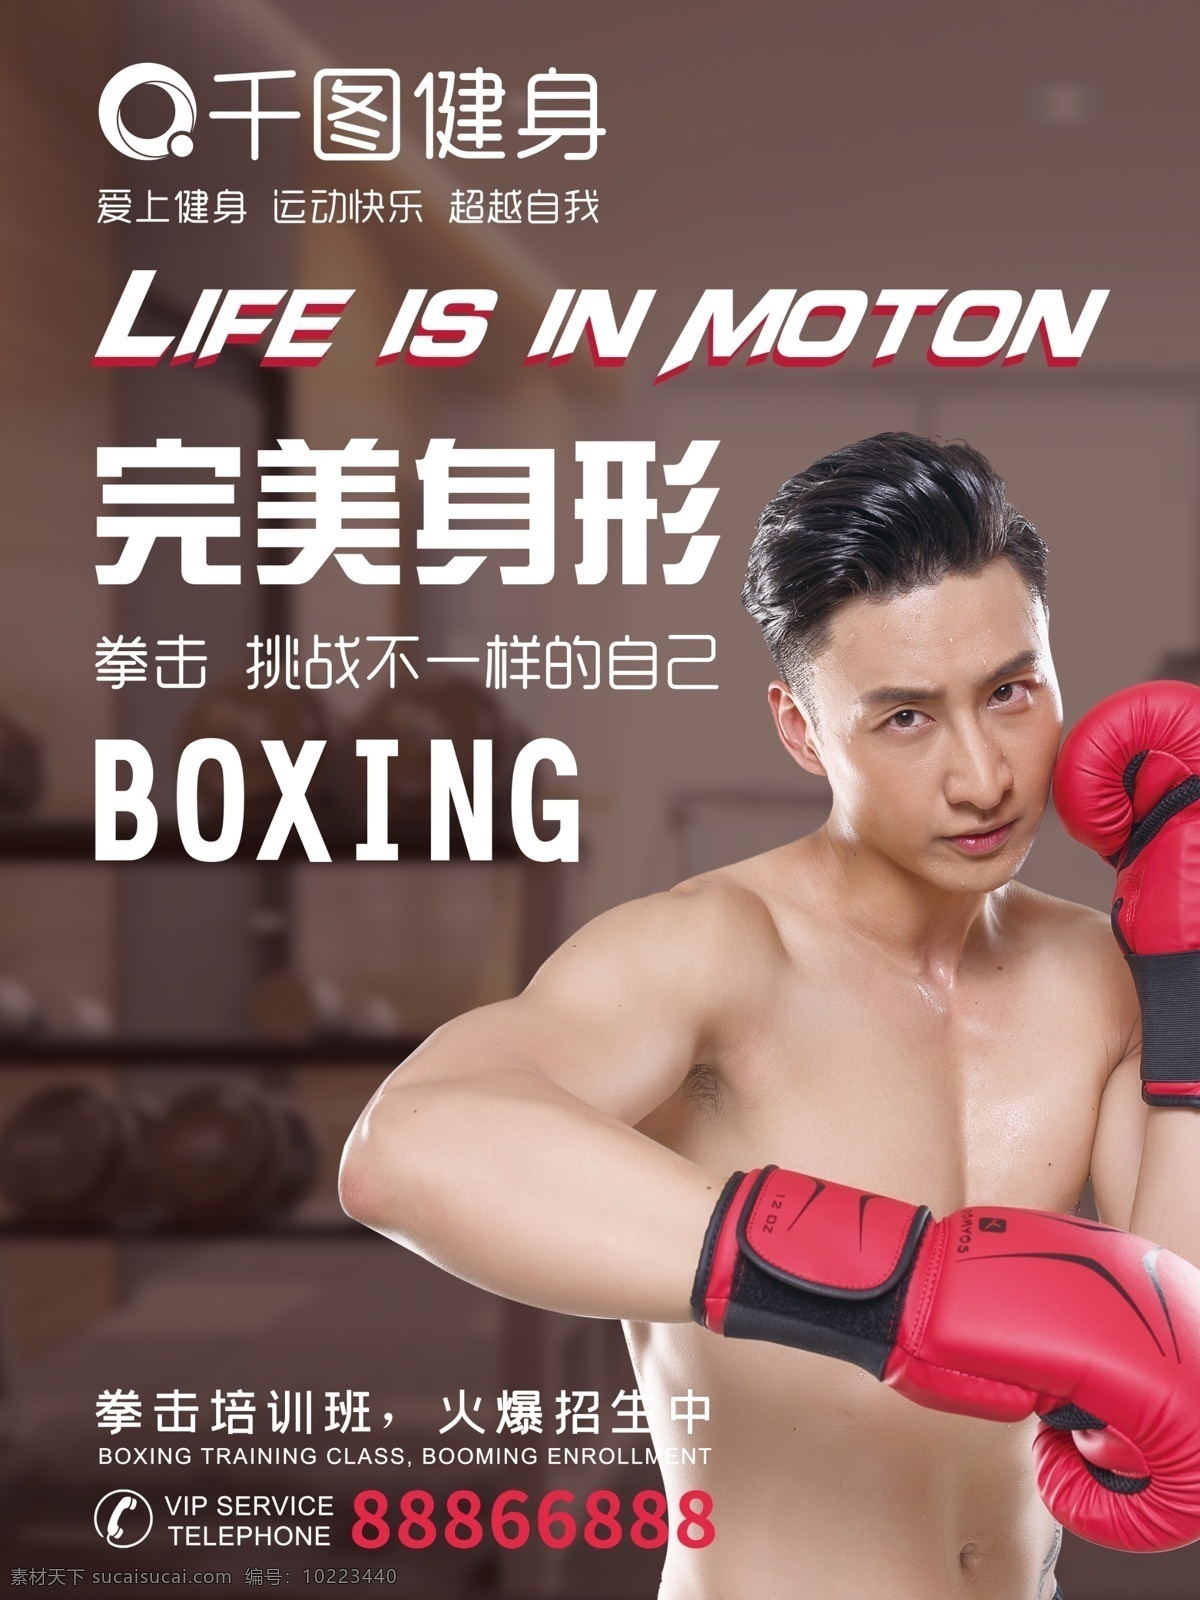 简约 商用 运动 健身 海报 简约海报 健身海报 运动健身 拳击海报 拳击